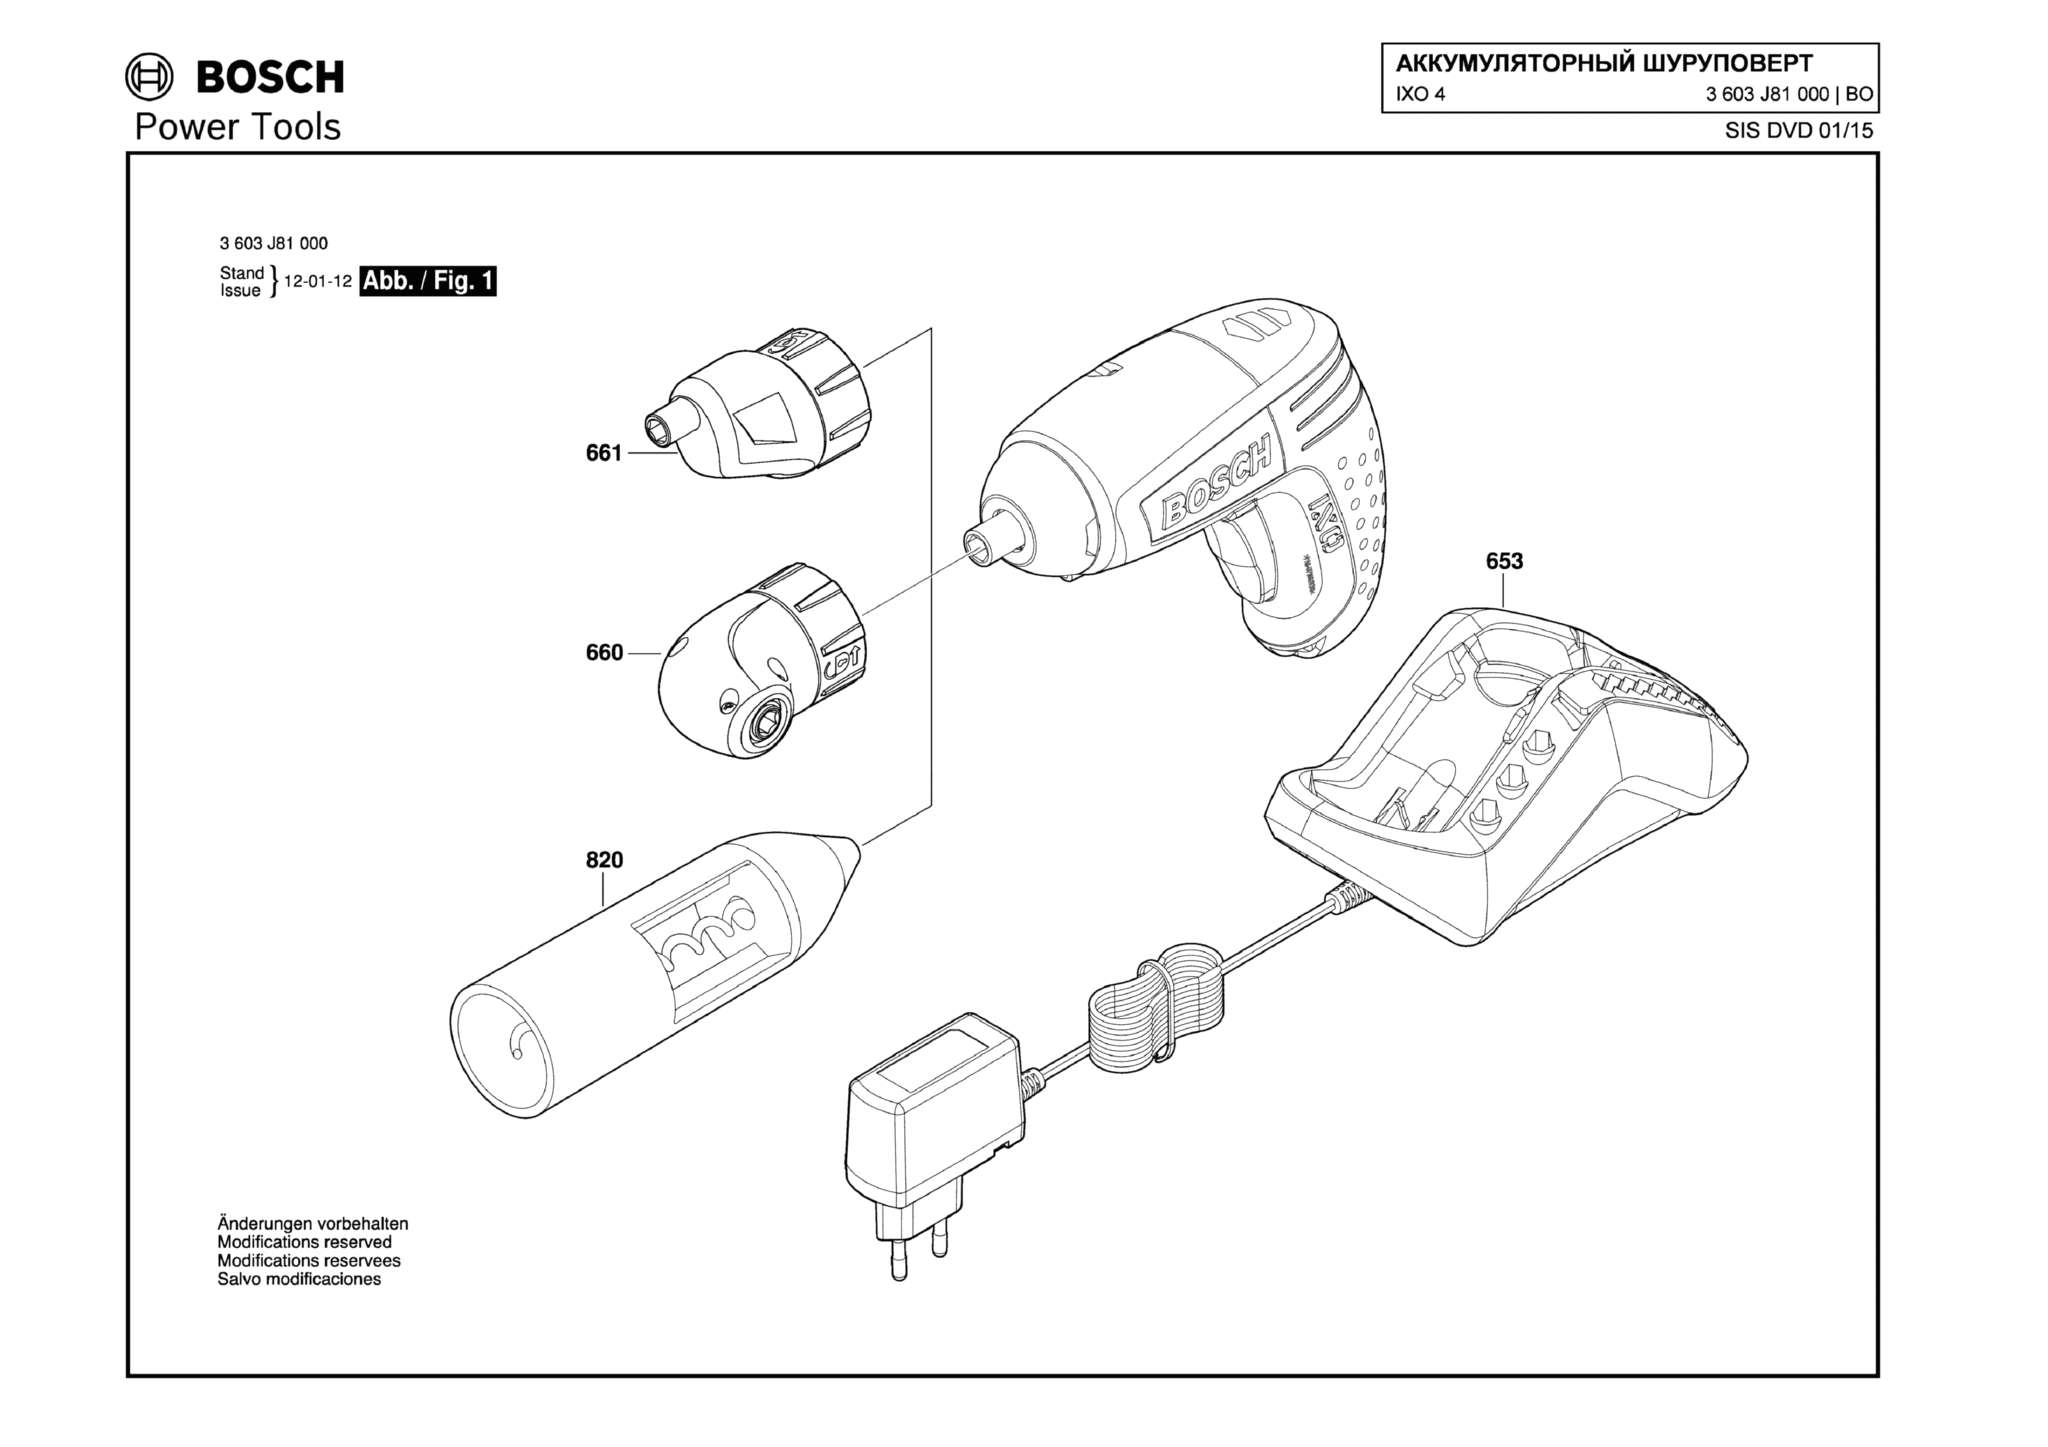 Запчасти, схема и деталировка Bosch IXO 4 (ТИП 3603J81000)